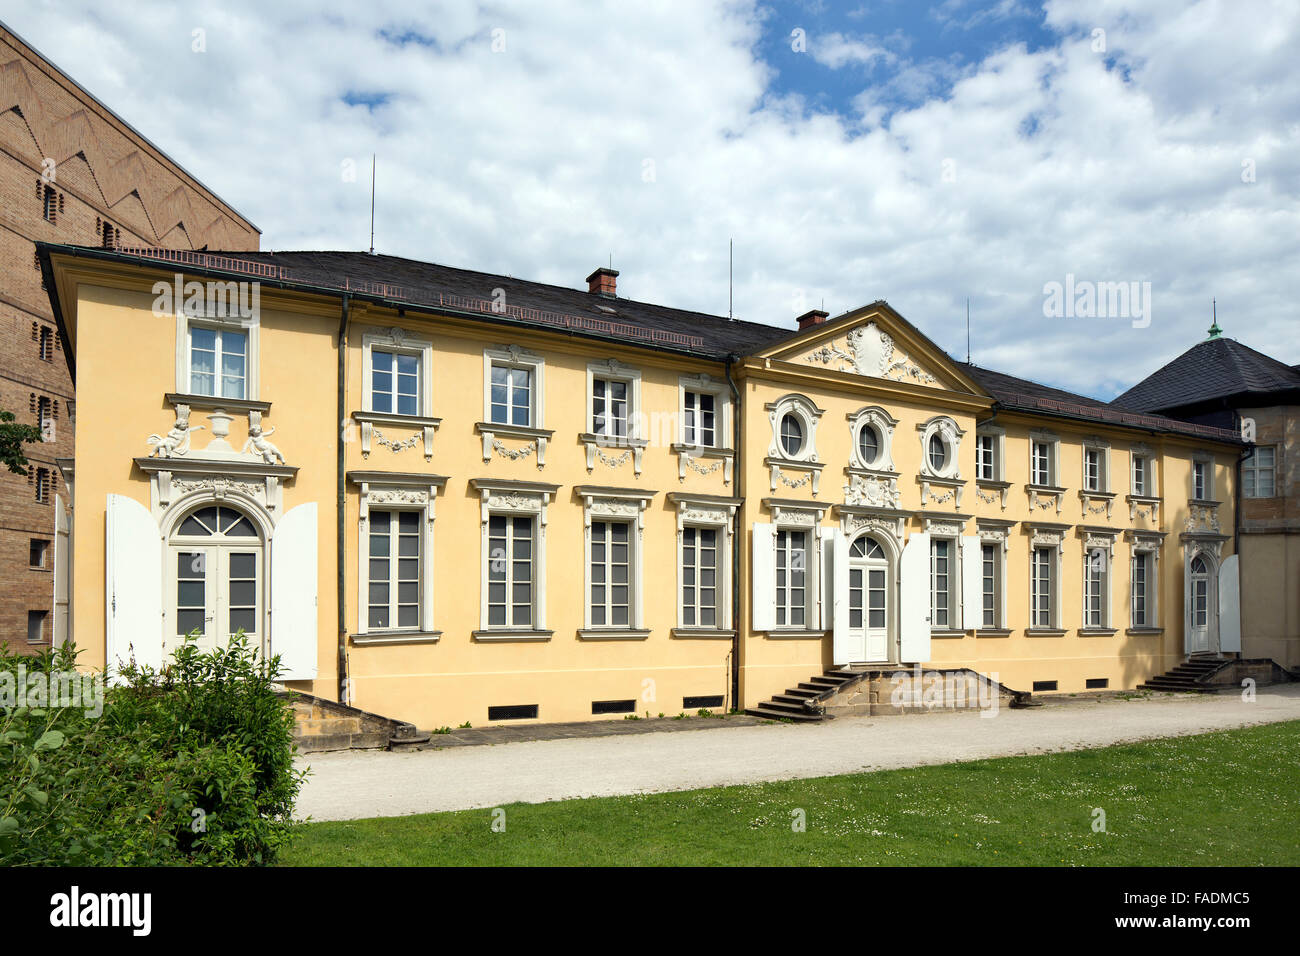 New Palace, Italian building, Bayreuth, Upper Franconia, Bavaria, Germany Stock Photo